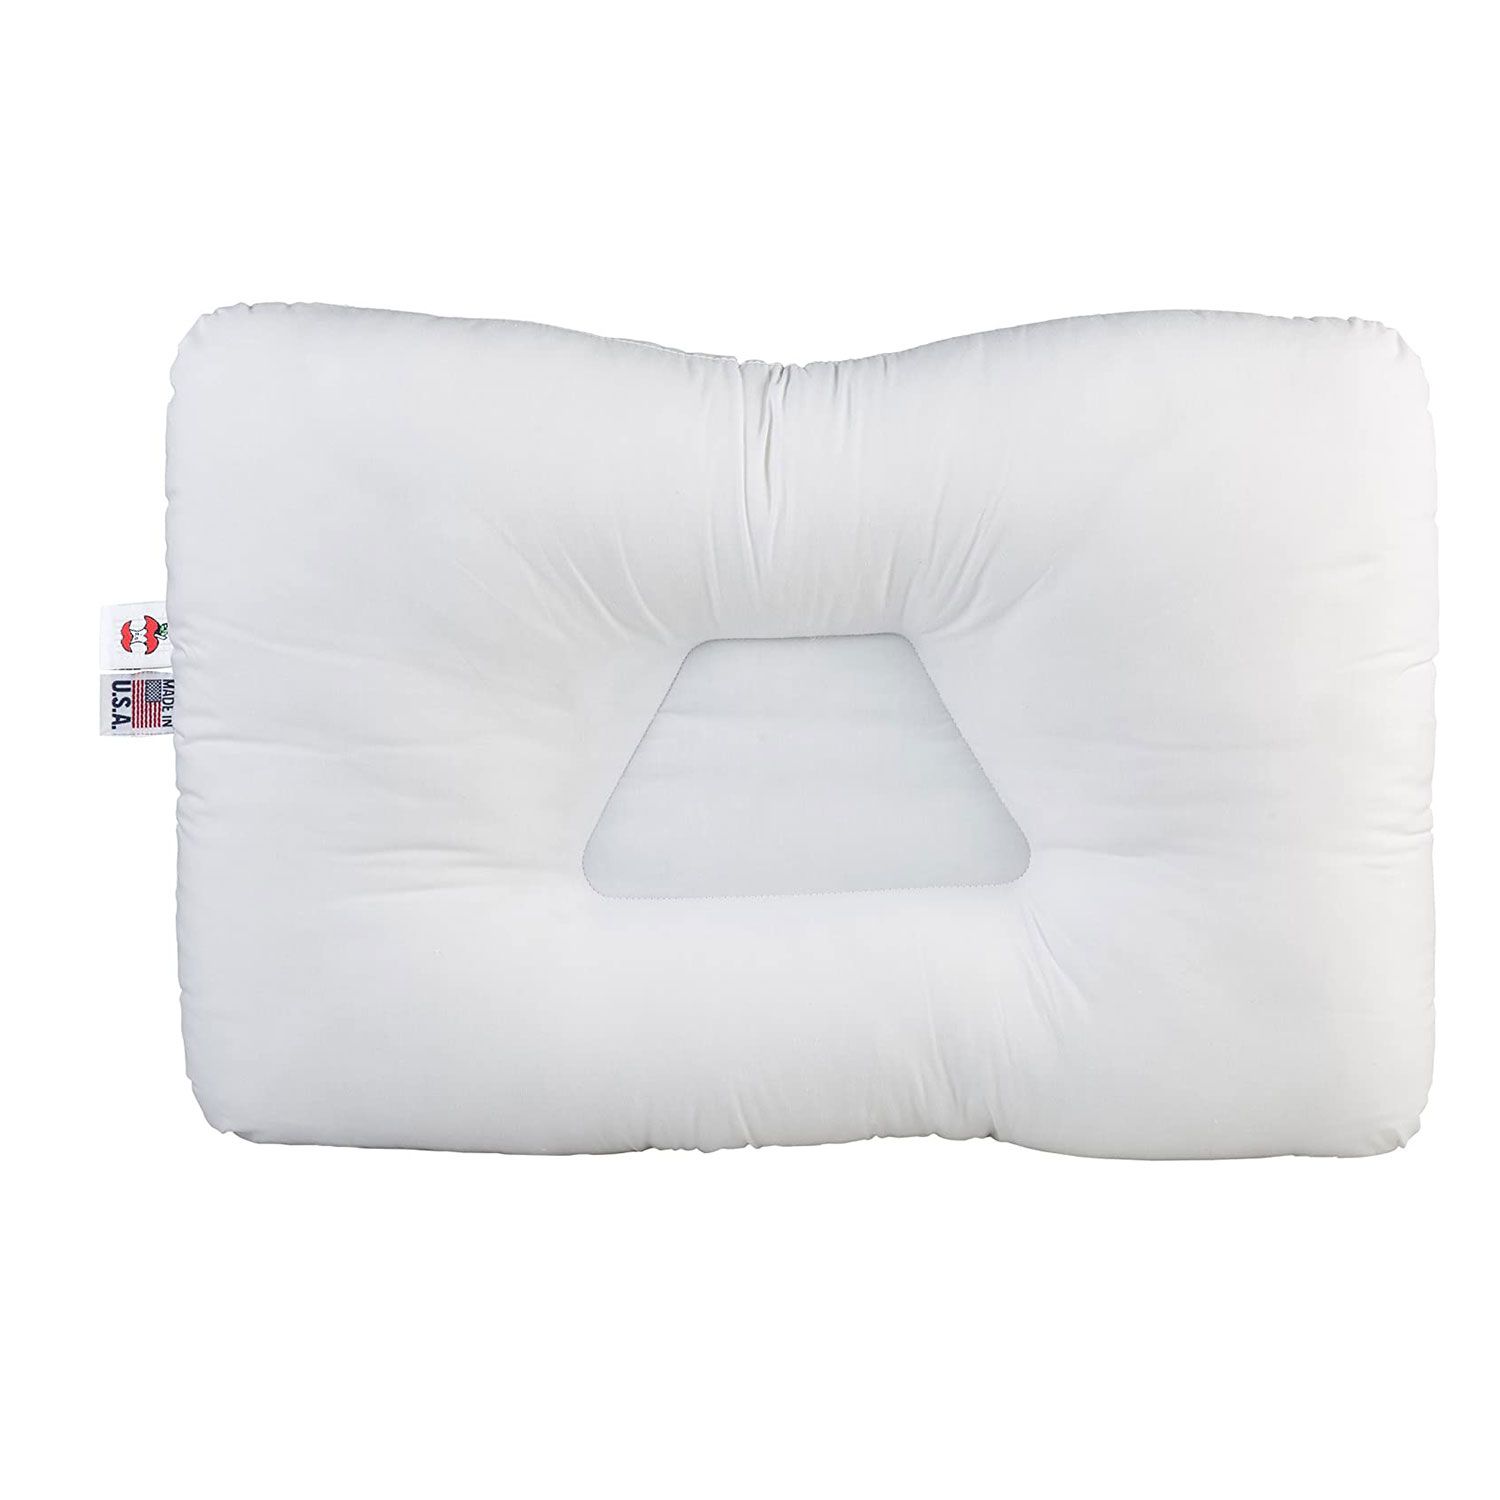 Pillow Amazon